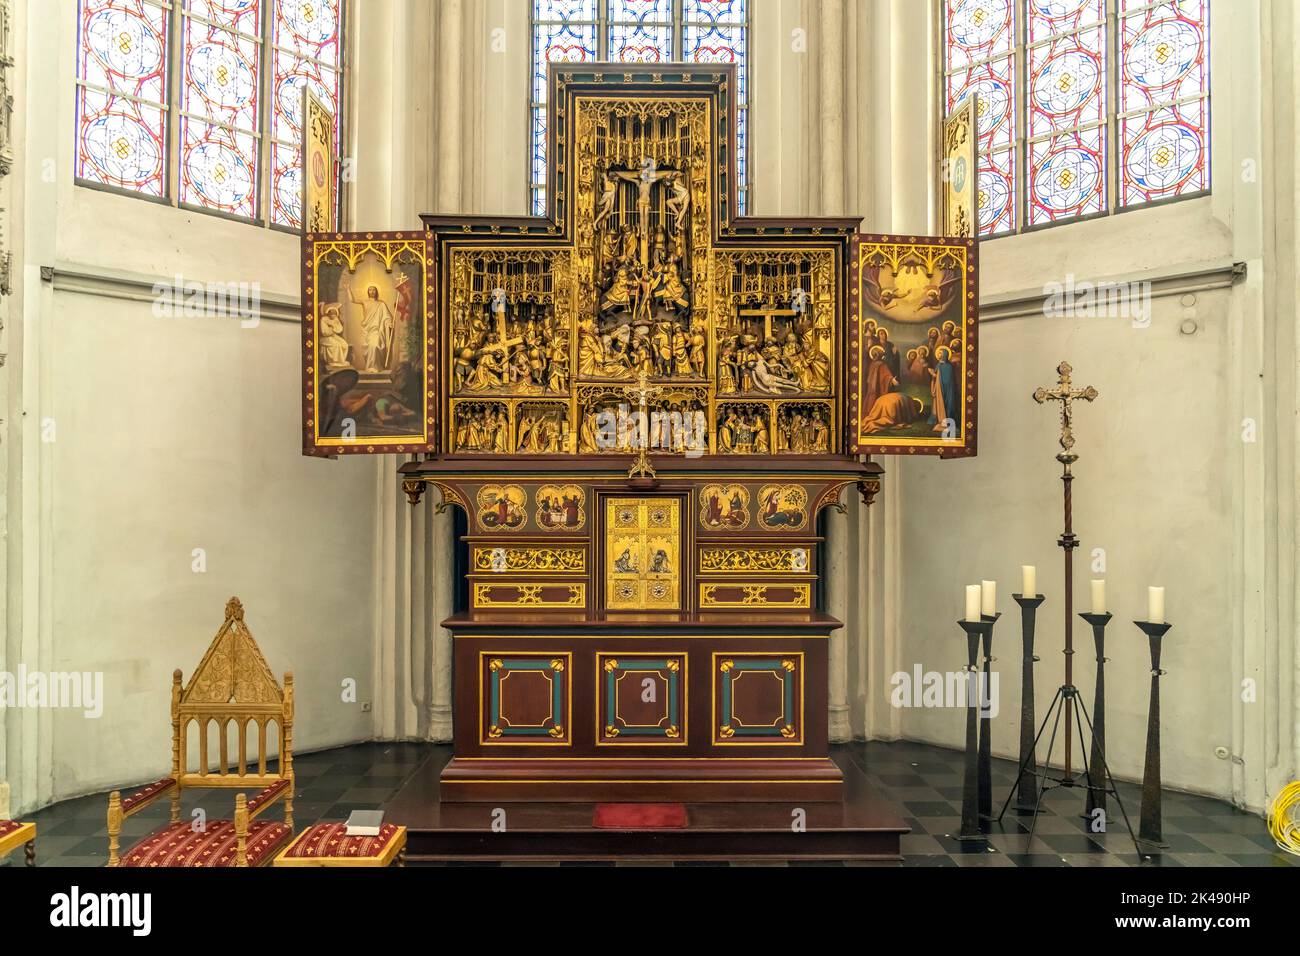 Altar der katholischen Pfarrkirche San Pedro y Pablo en Straelen, Nordrhein-Westfalen, Deutschland, Europa | Iglesia de San Pedro y Pablo Altar, Str Foto de stock